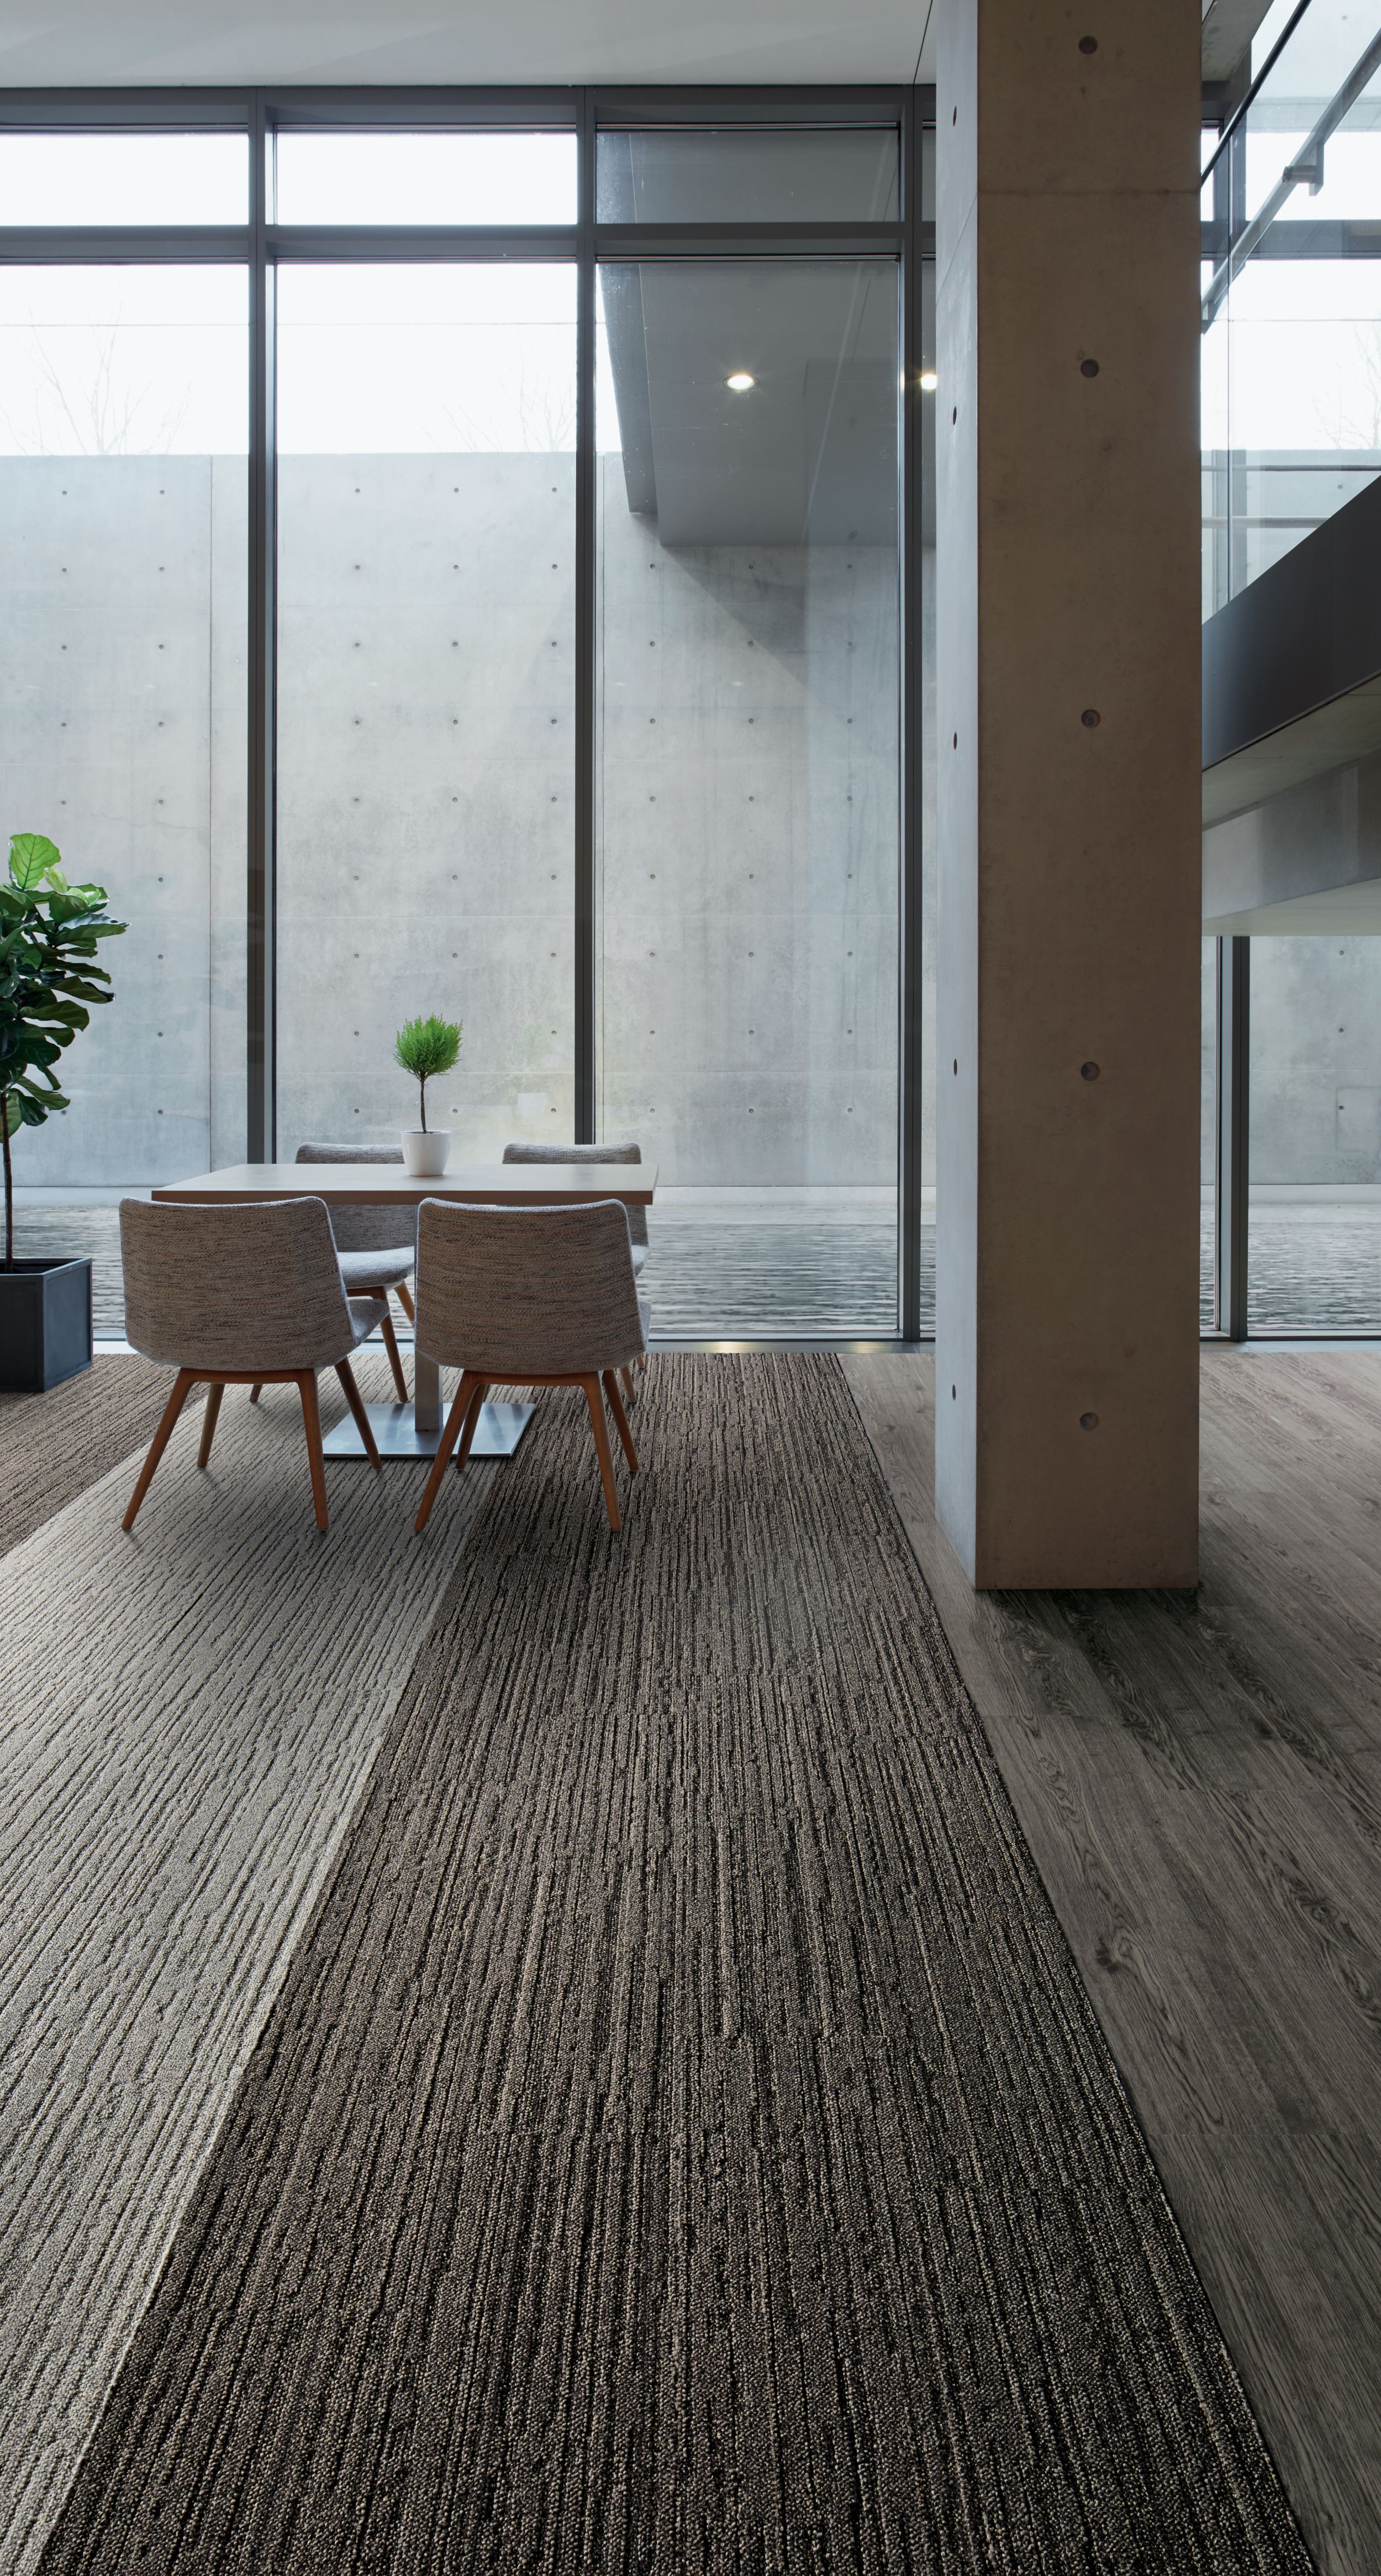 Interface WW880 plank carpet tile and Natural Woodgrains LVT in office common area número de imagen 2